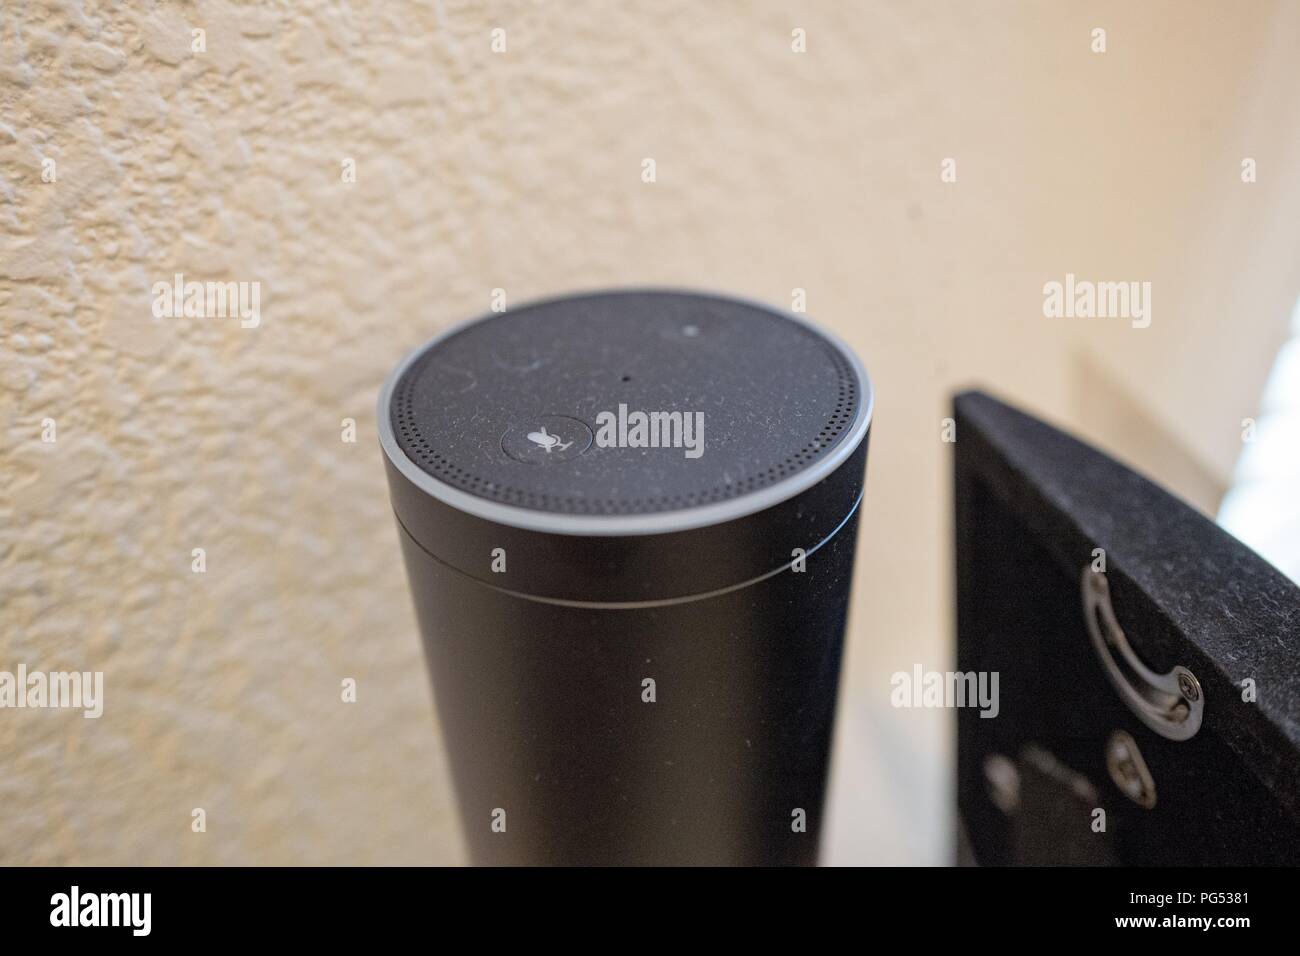 Close-up di Amazon eco Altoparlante smart e Assistente vocale che utilizza il servizio Amazon da Amazon per riconoscere e rispondere agli utenti dei comandi vocali, in una casa suburbana impostazione, 7 maggio 2018. () Foto Stock